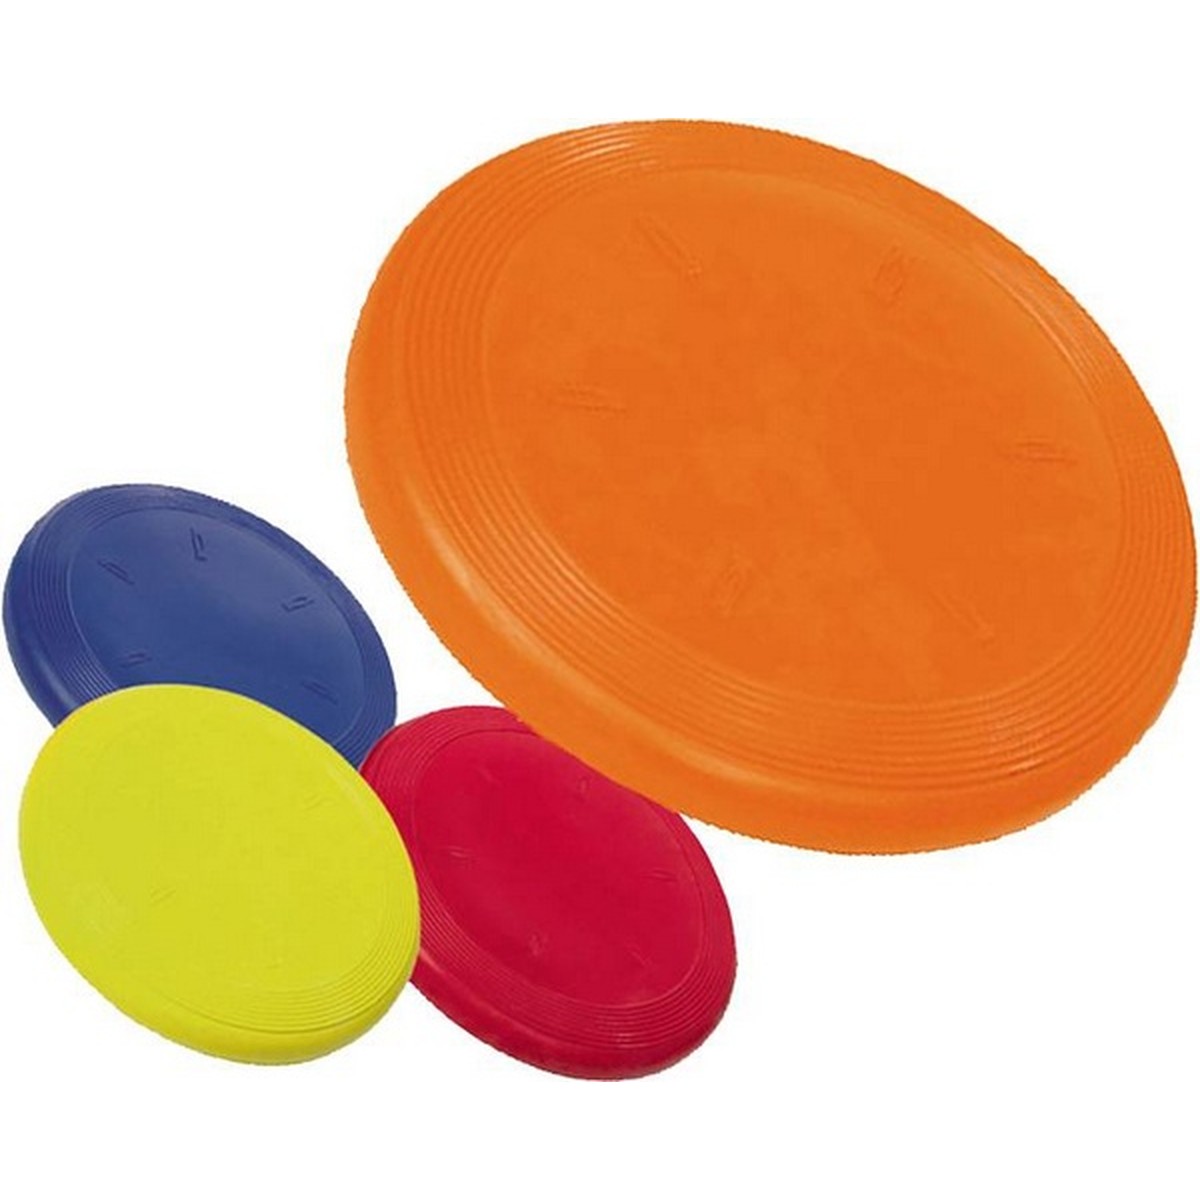   Frisbee en caoutchouc. Ø 19 cm. col. ass  Ø 19 cm